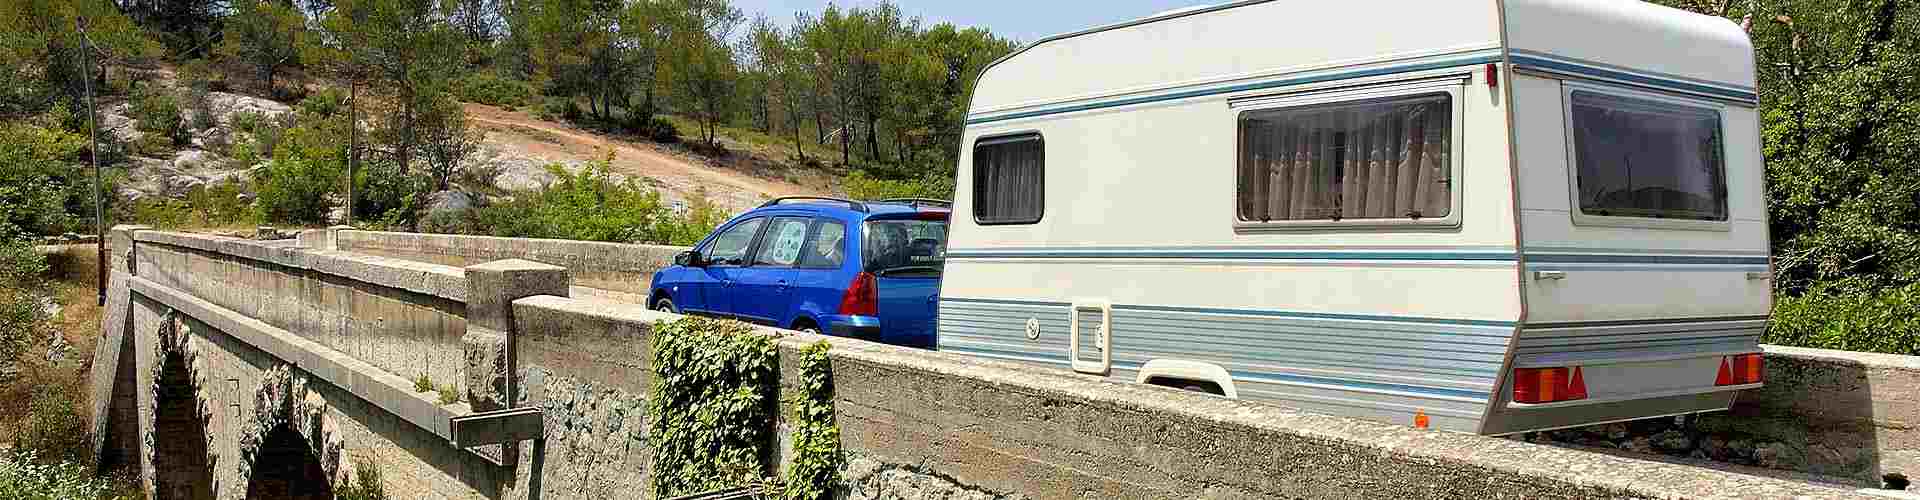 Campings y bungalows en Tarragona provincia